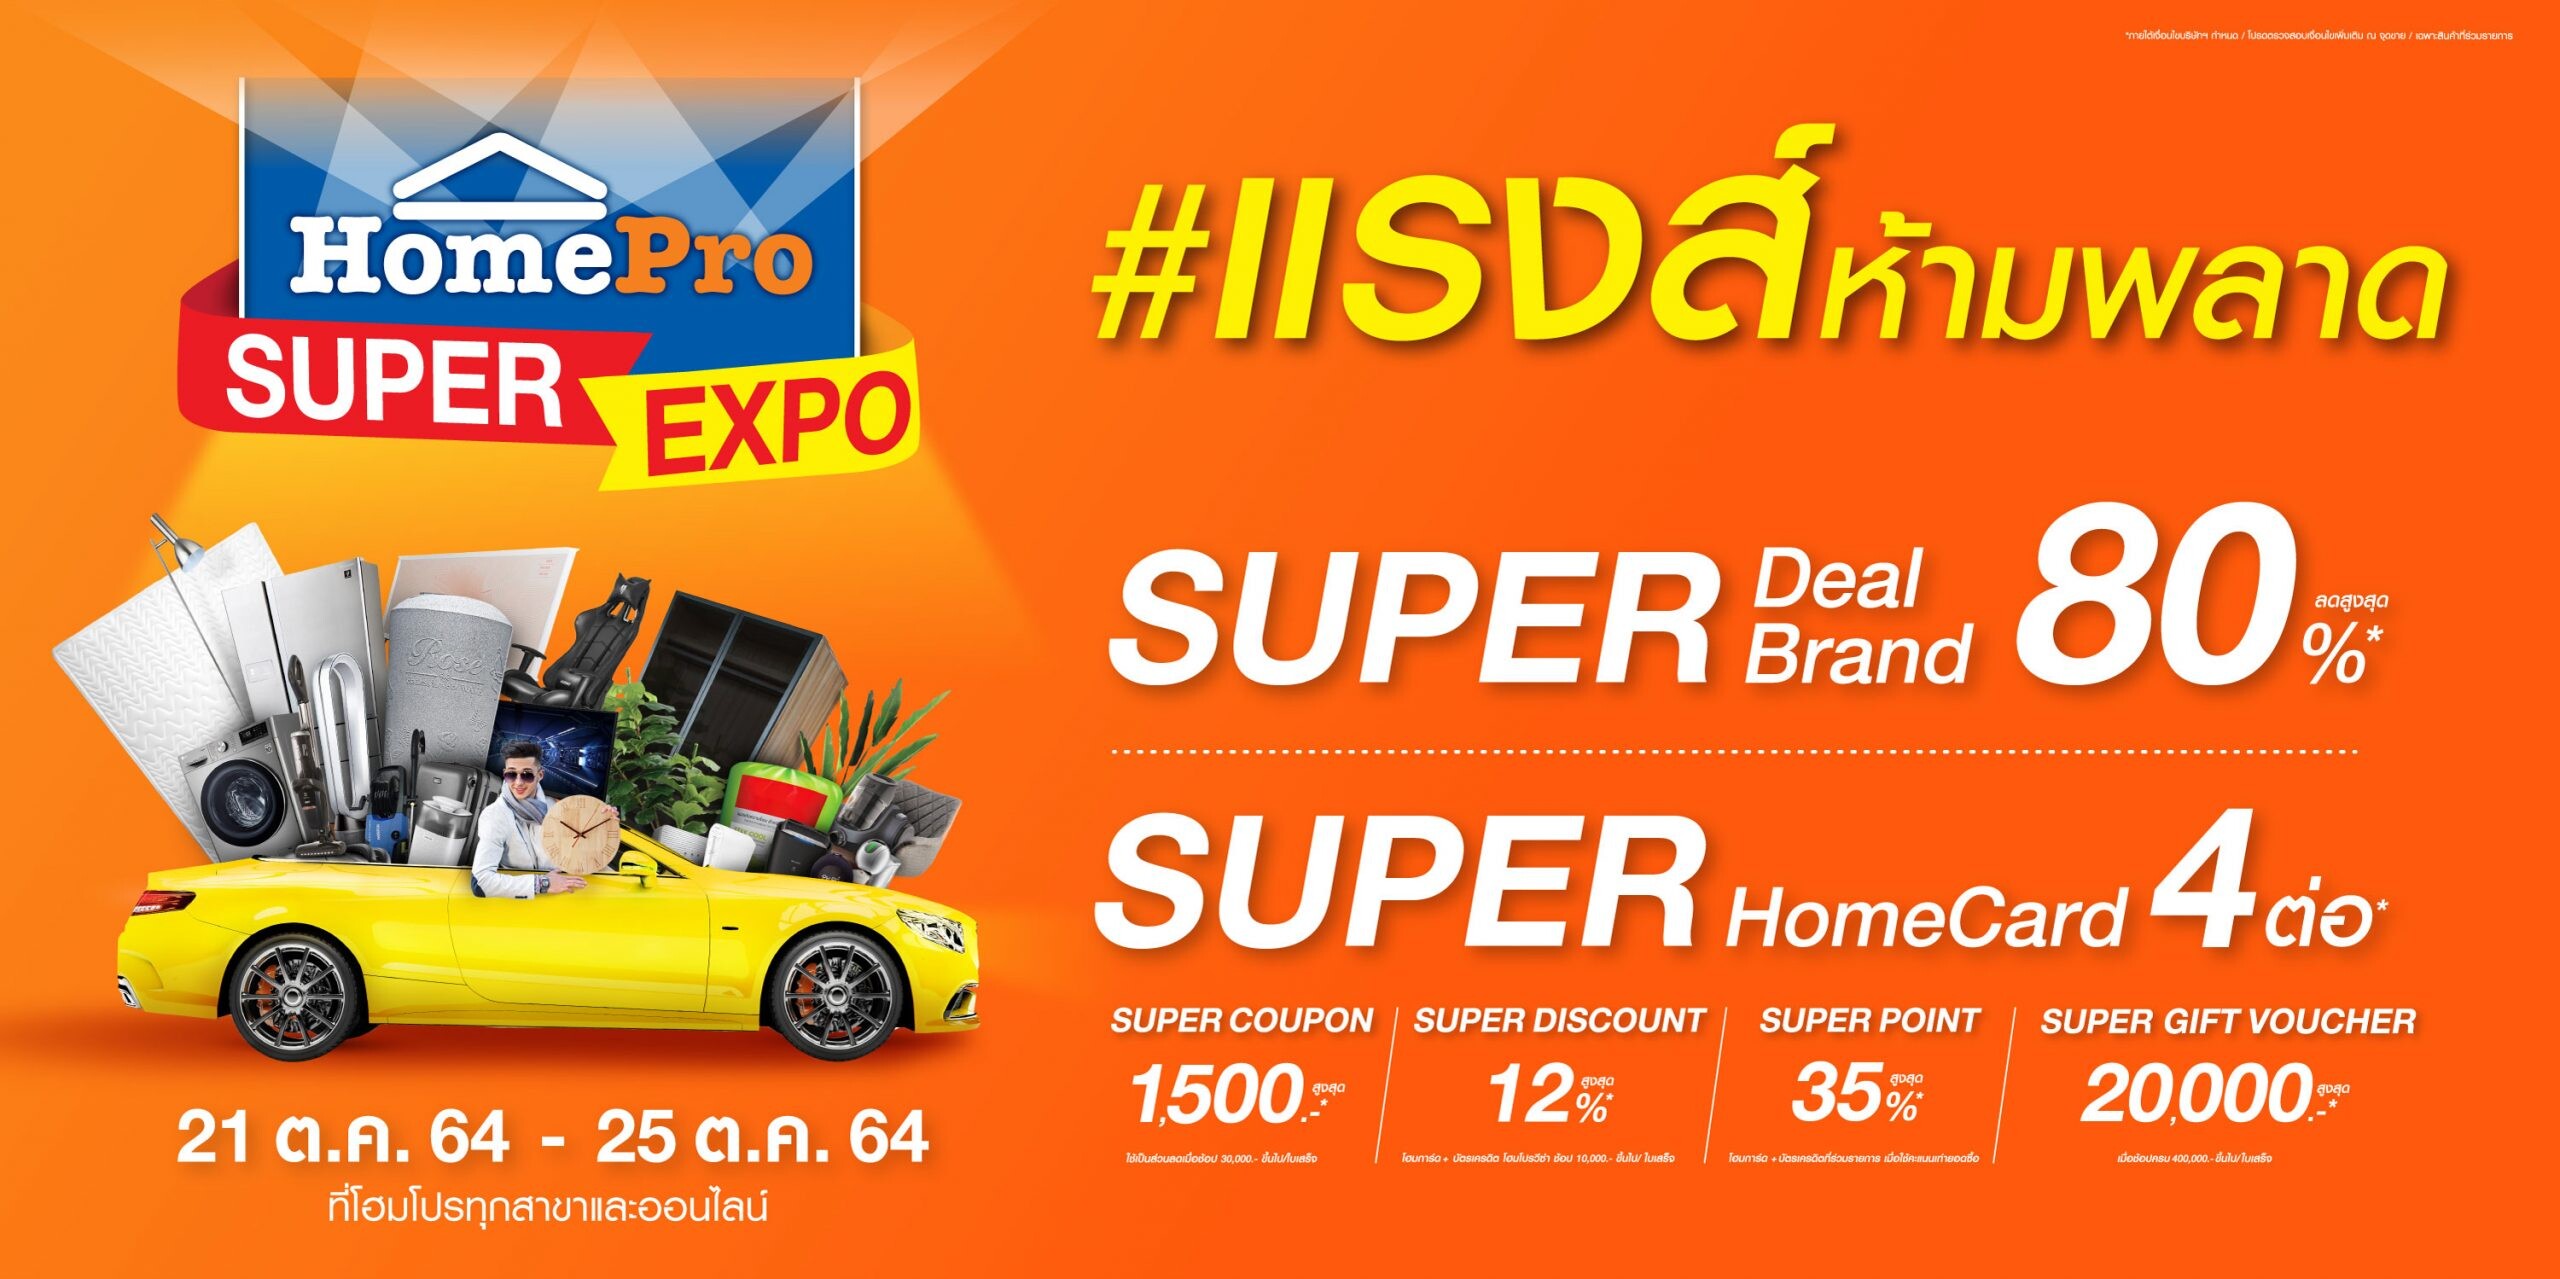 คนรักบ้าน ห้ามพลาด!!! HomePro SUPER EXPO ลด แรงส์สูงสุดกว่า 80% 21 ต.ค. 64 - 25 ต.ค. 64 ที่โฮมโปรทุกสาขา และช้อปออนไลน์